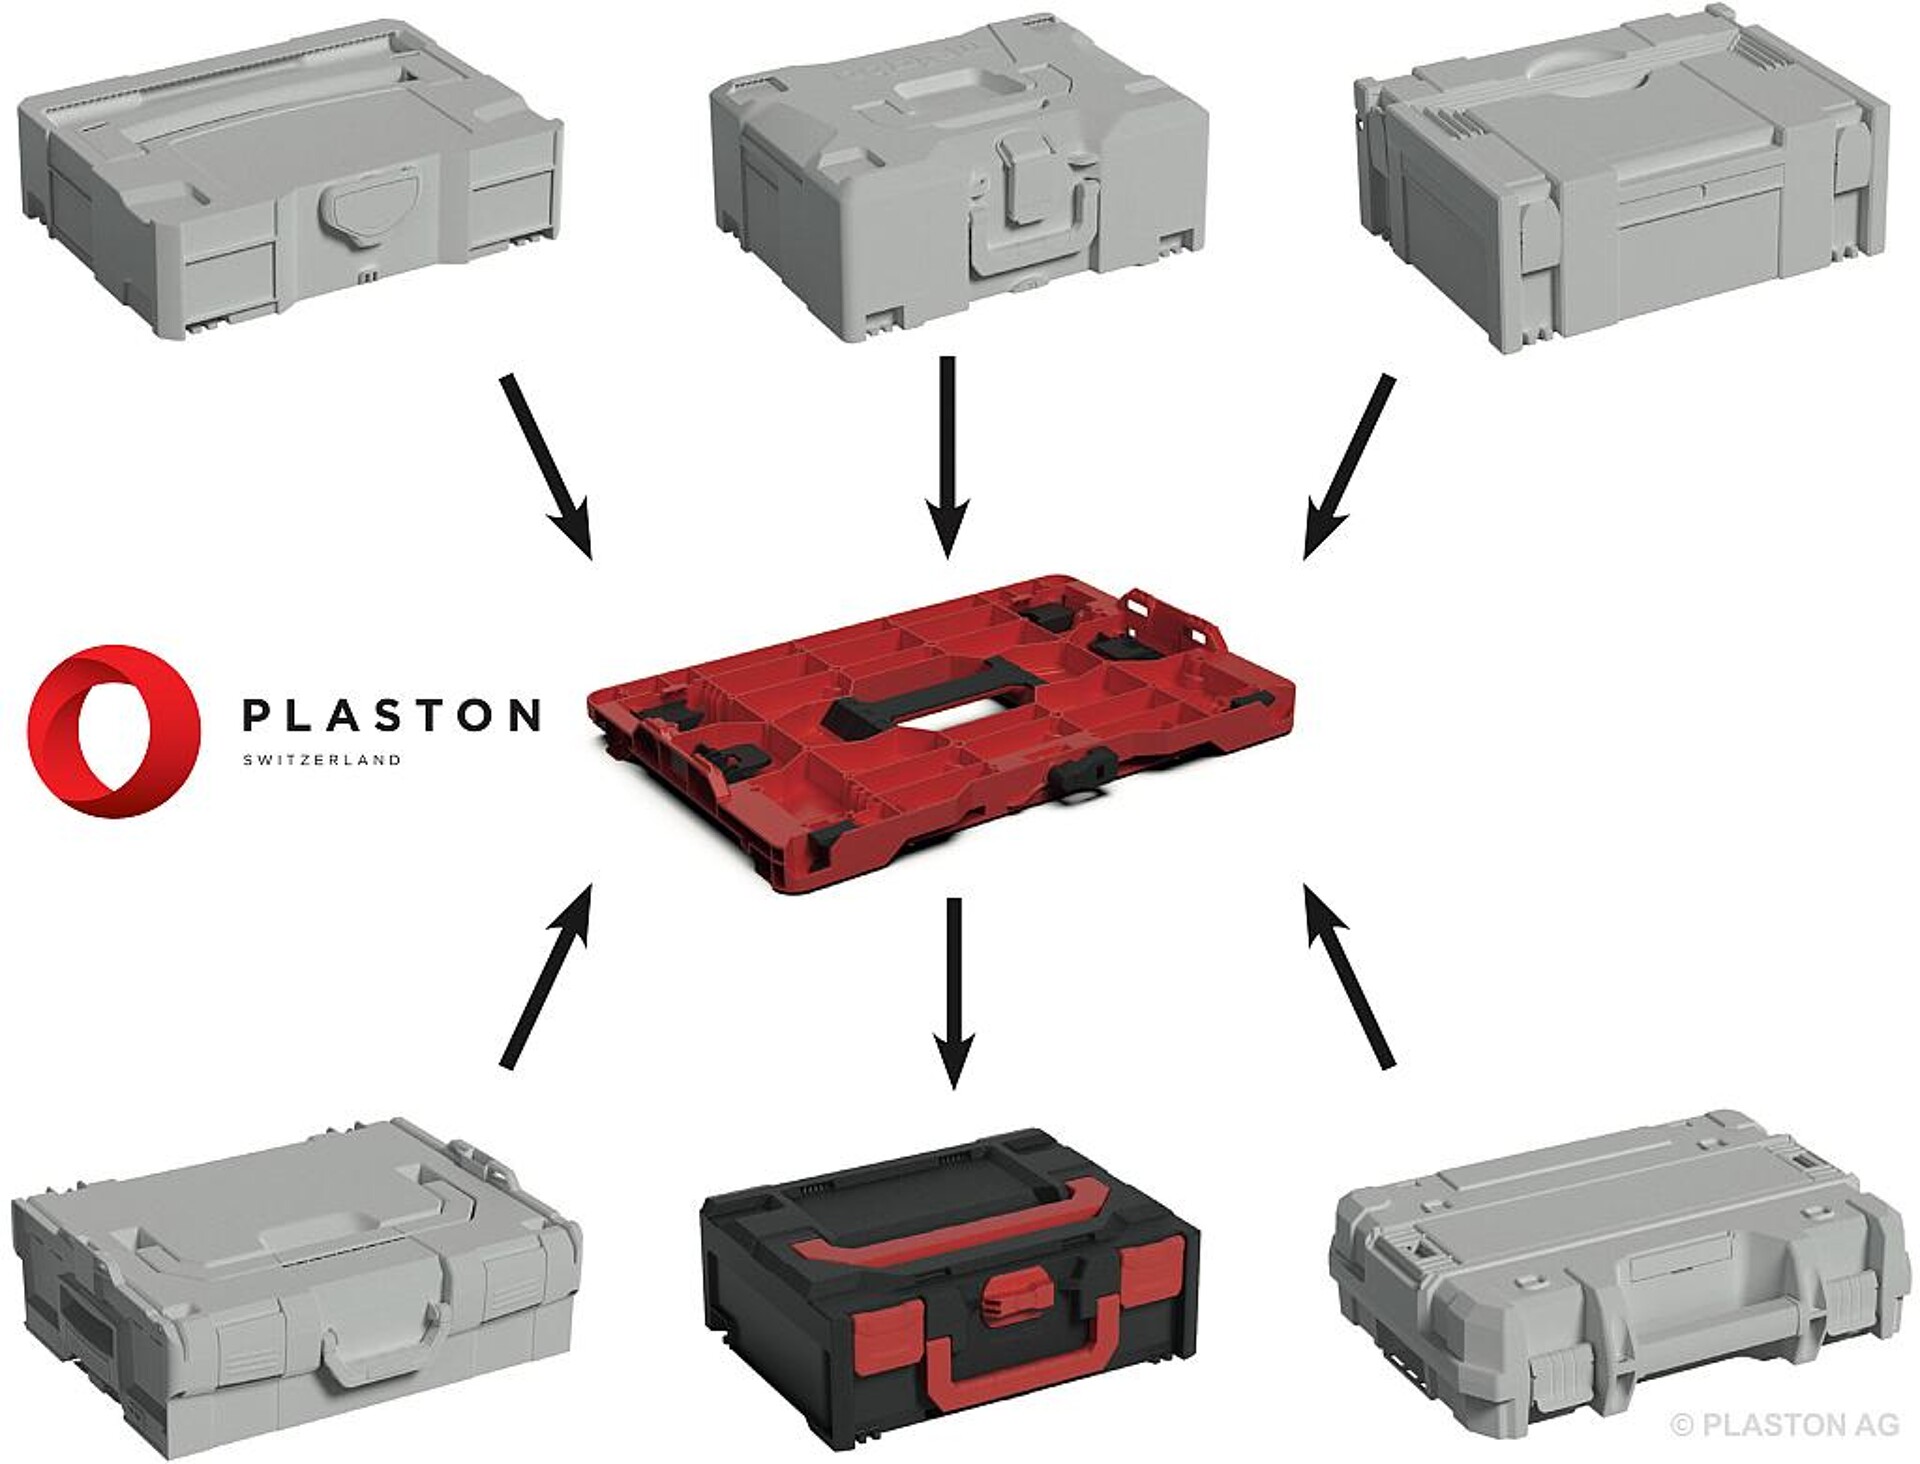 Die Hybrid-Adapterplatte ermöglicht es, Boxen verschiedener Hersteller zu stapeln. (Abb.: Plaston)